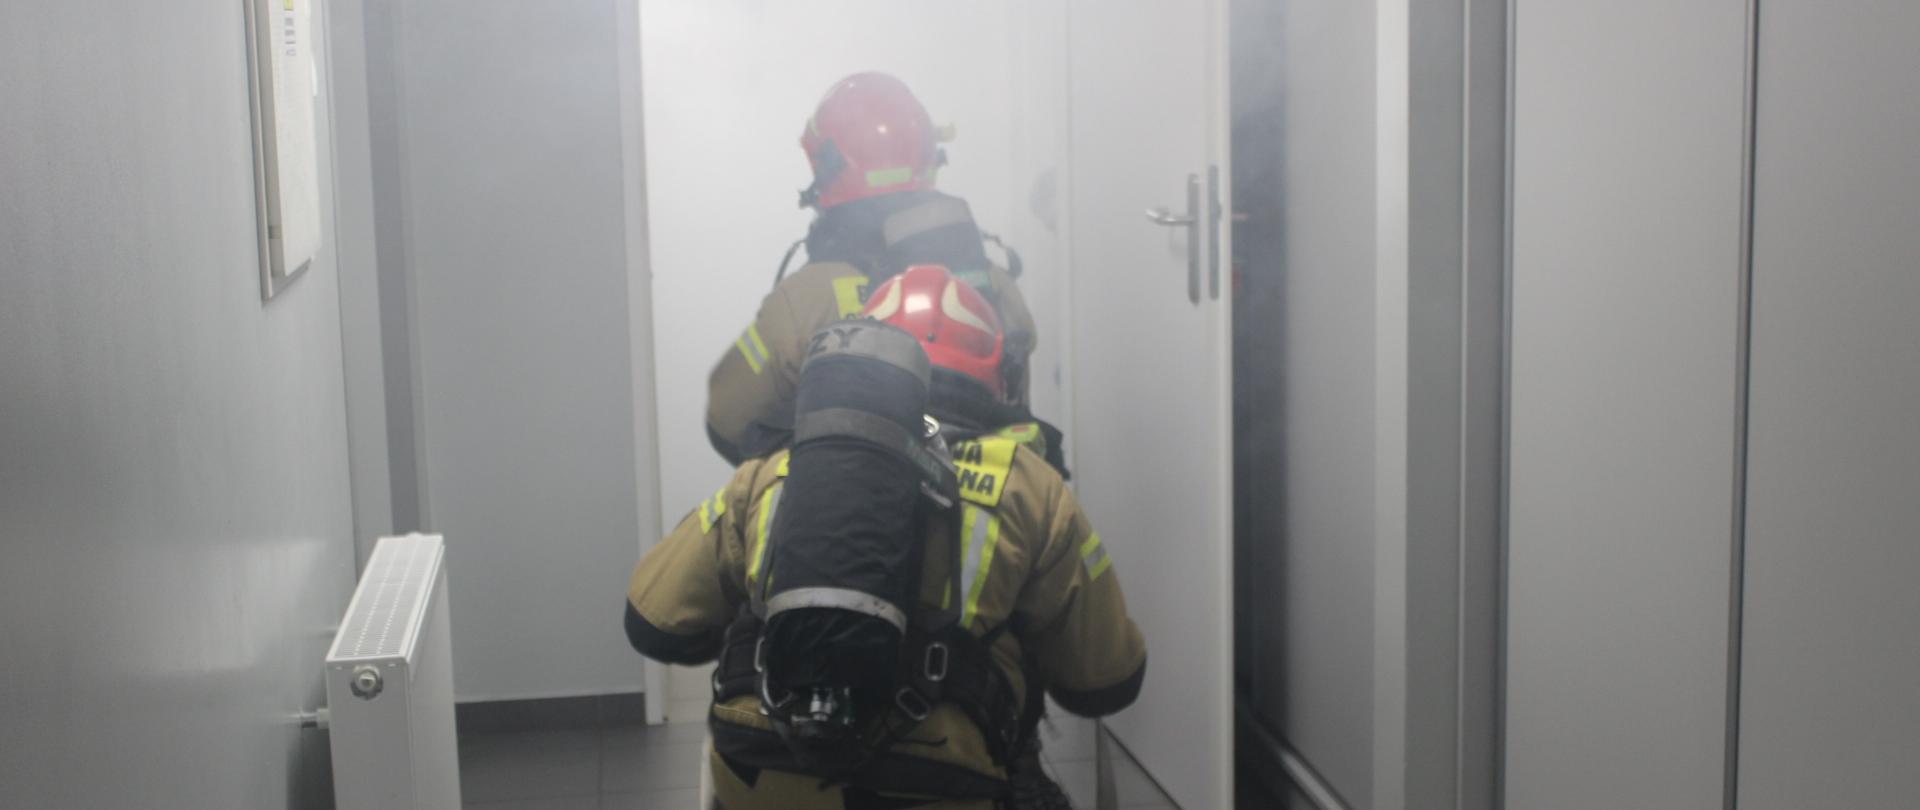 Strażacy przed wejściem do zadymionego pomieszczenia podczas symulowanej akcji ratowniczo-gaśniczej w SP ZOZ w Bielsku Podlaskim.